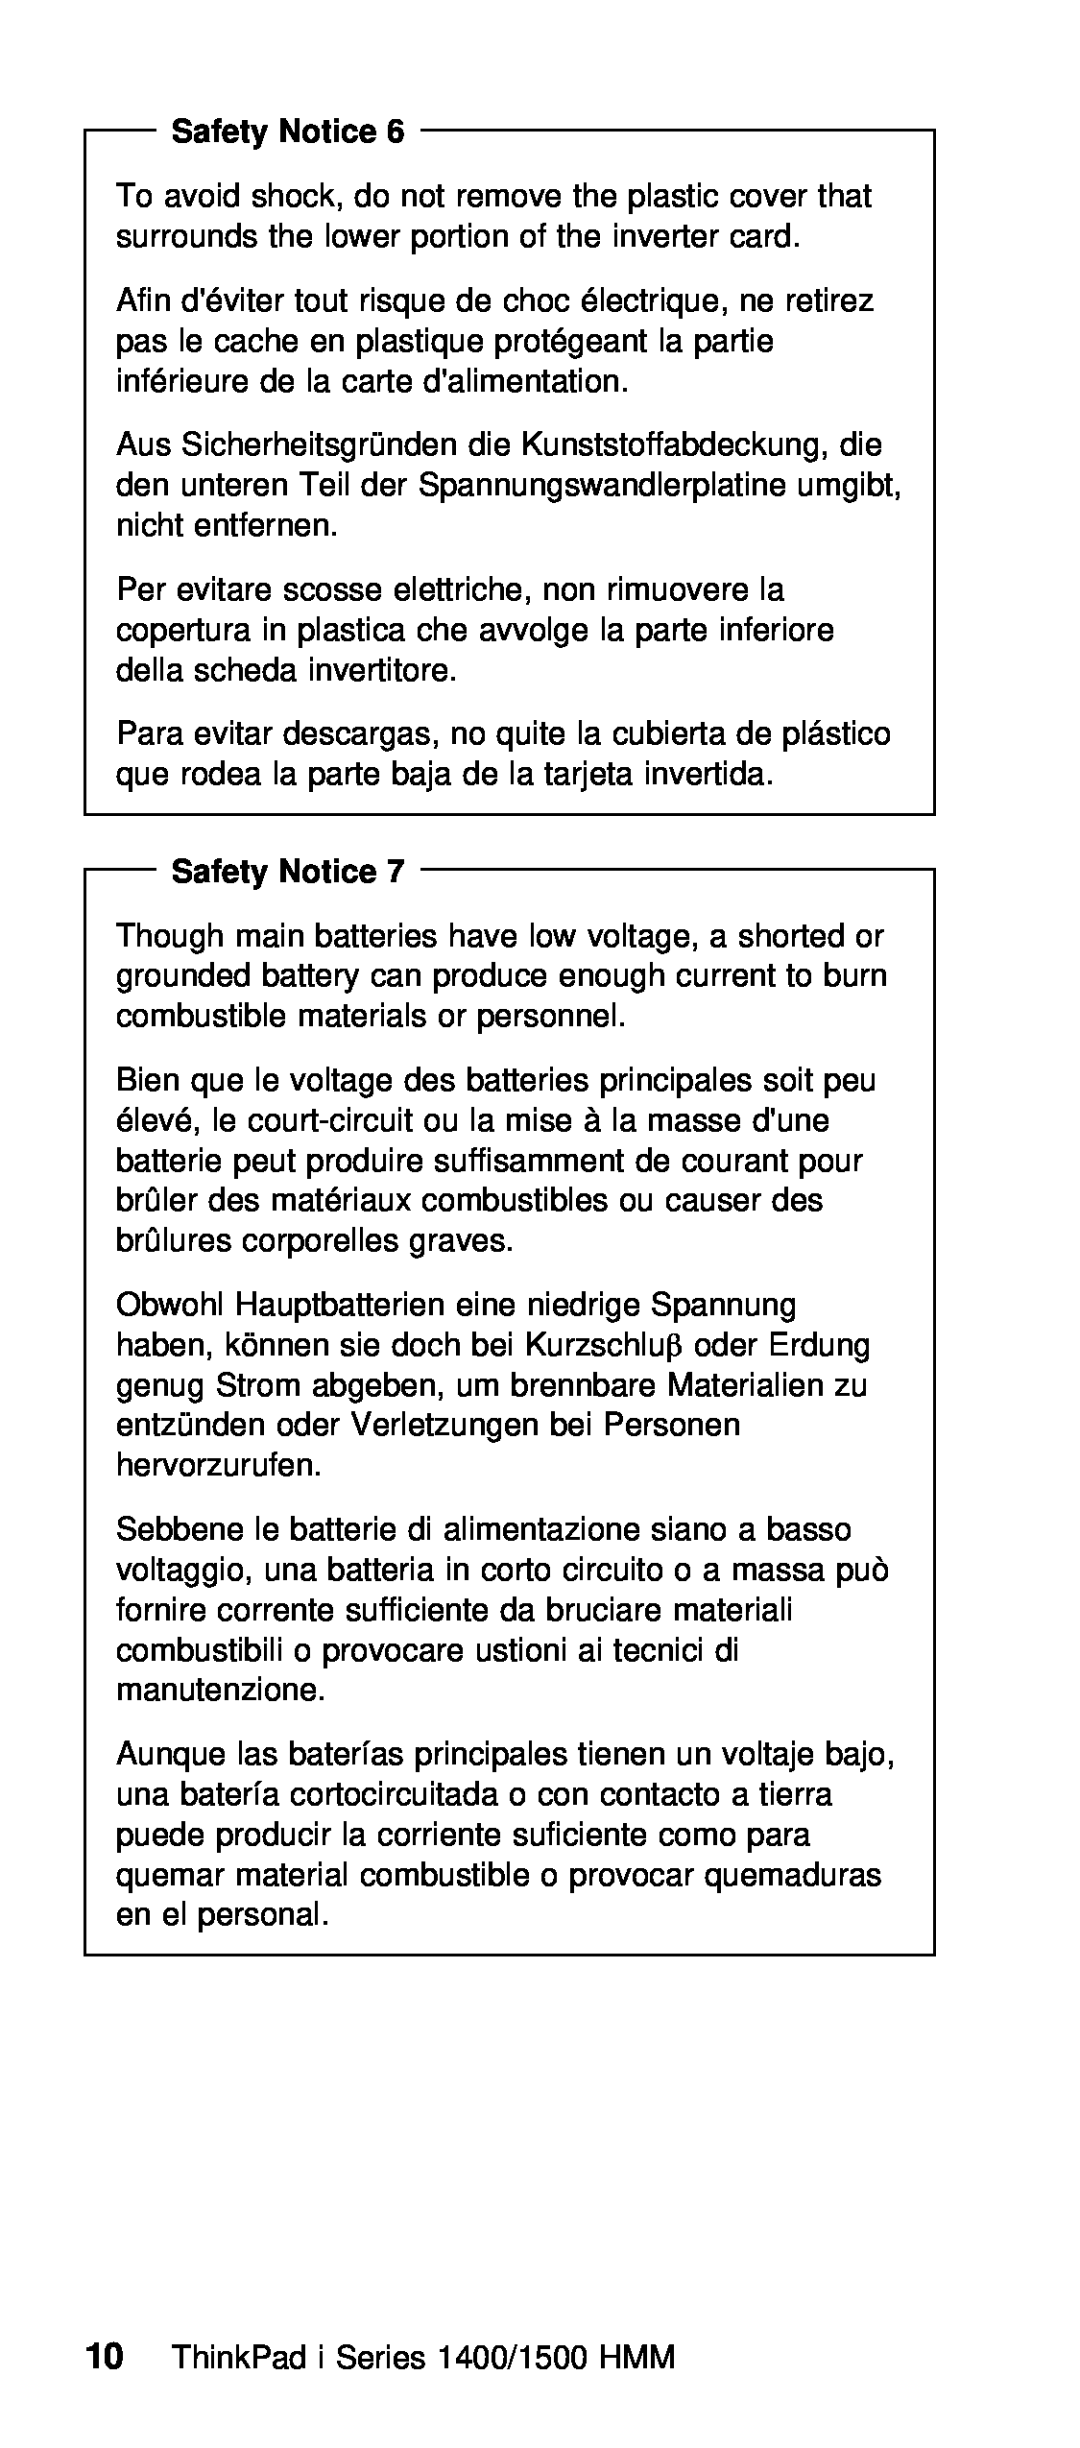 IBM Series 1500, Series 1400 manual Safety Notice 